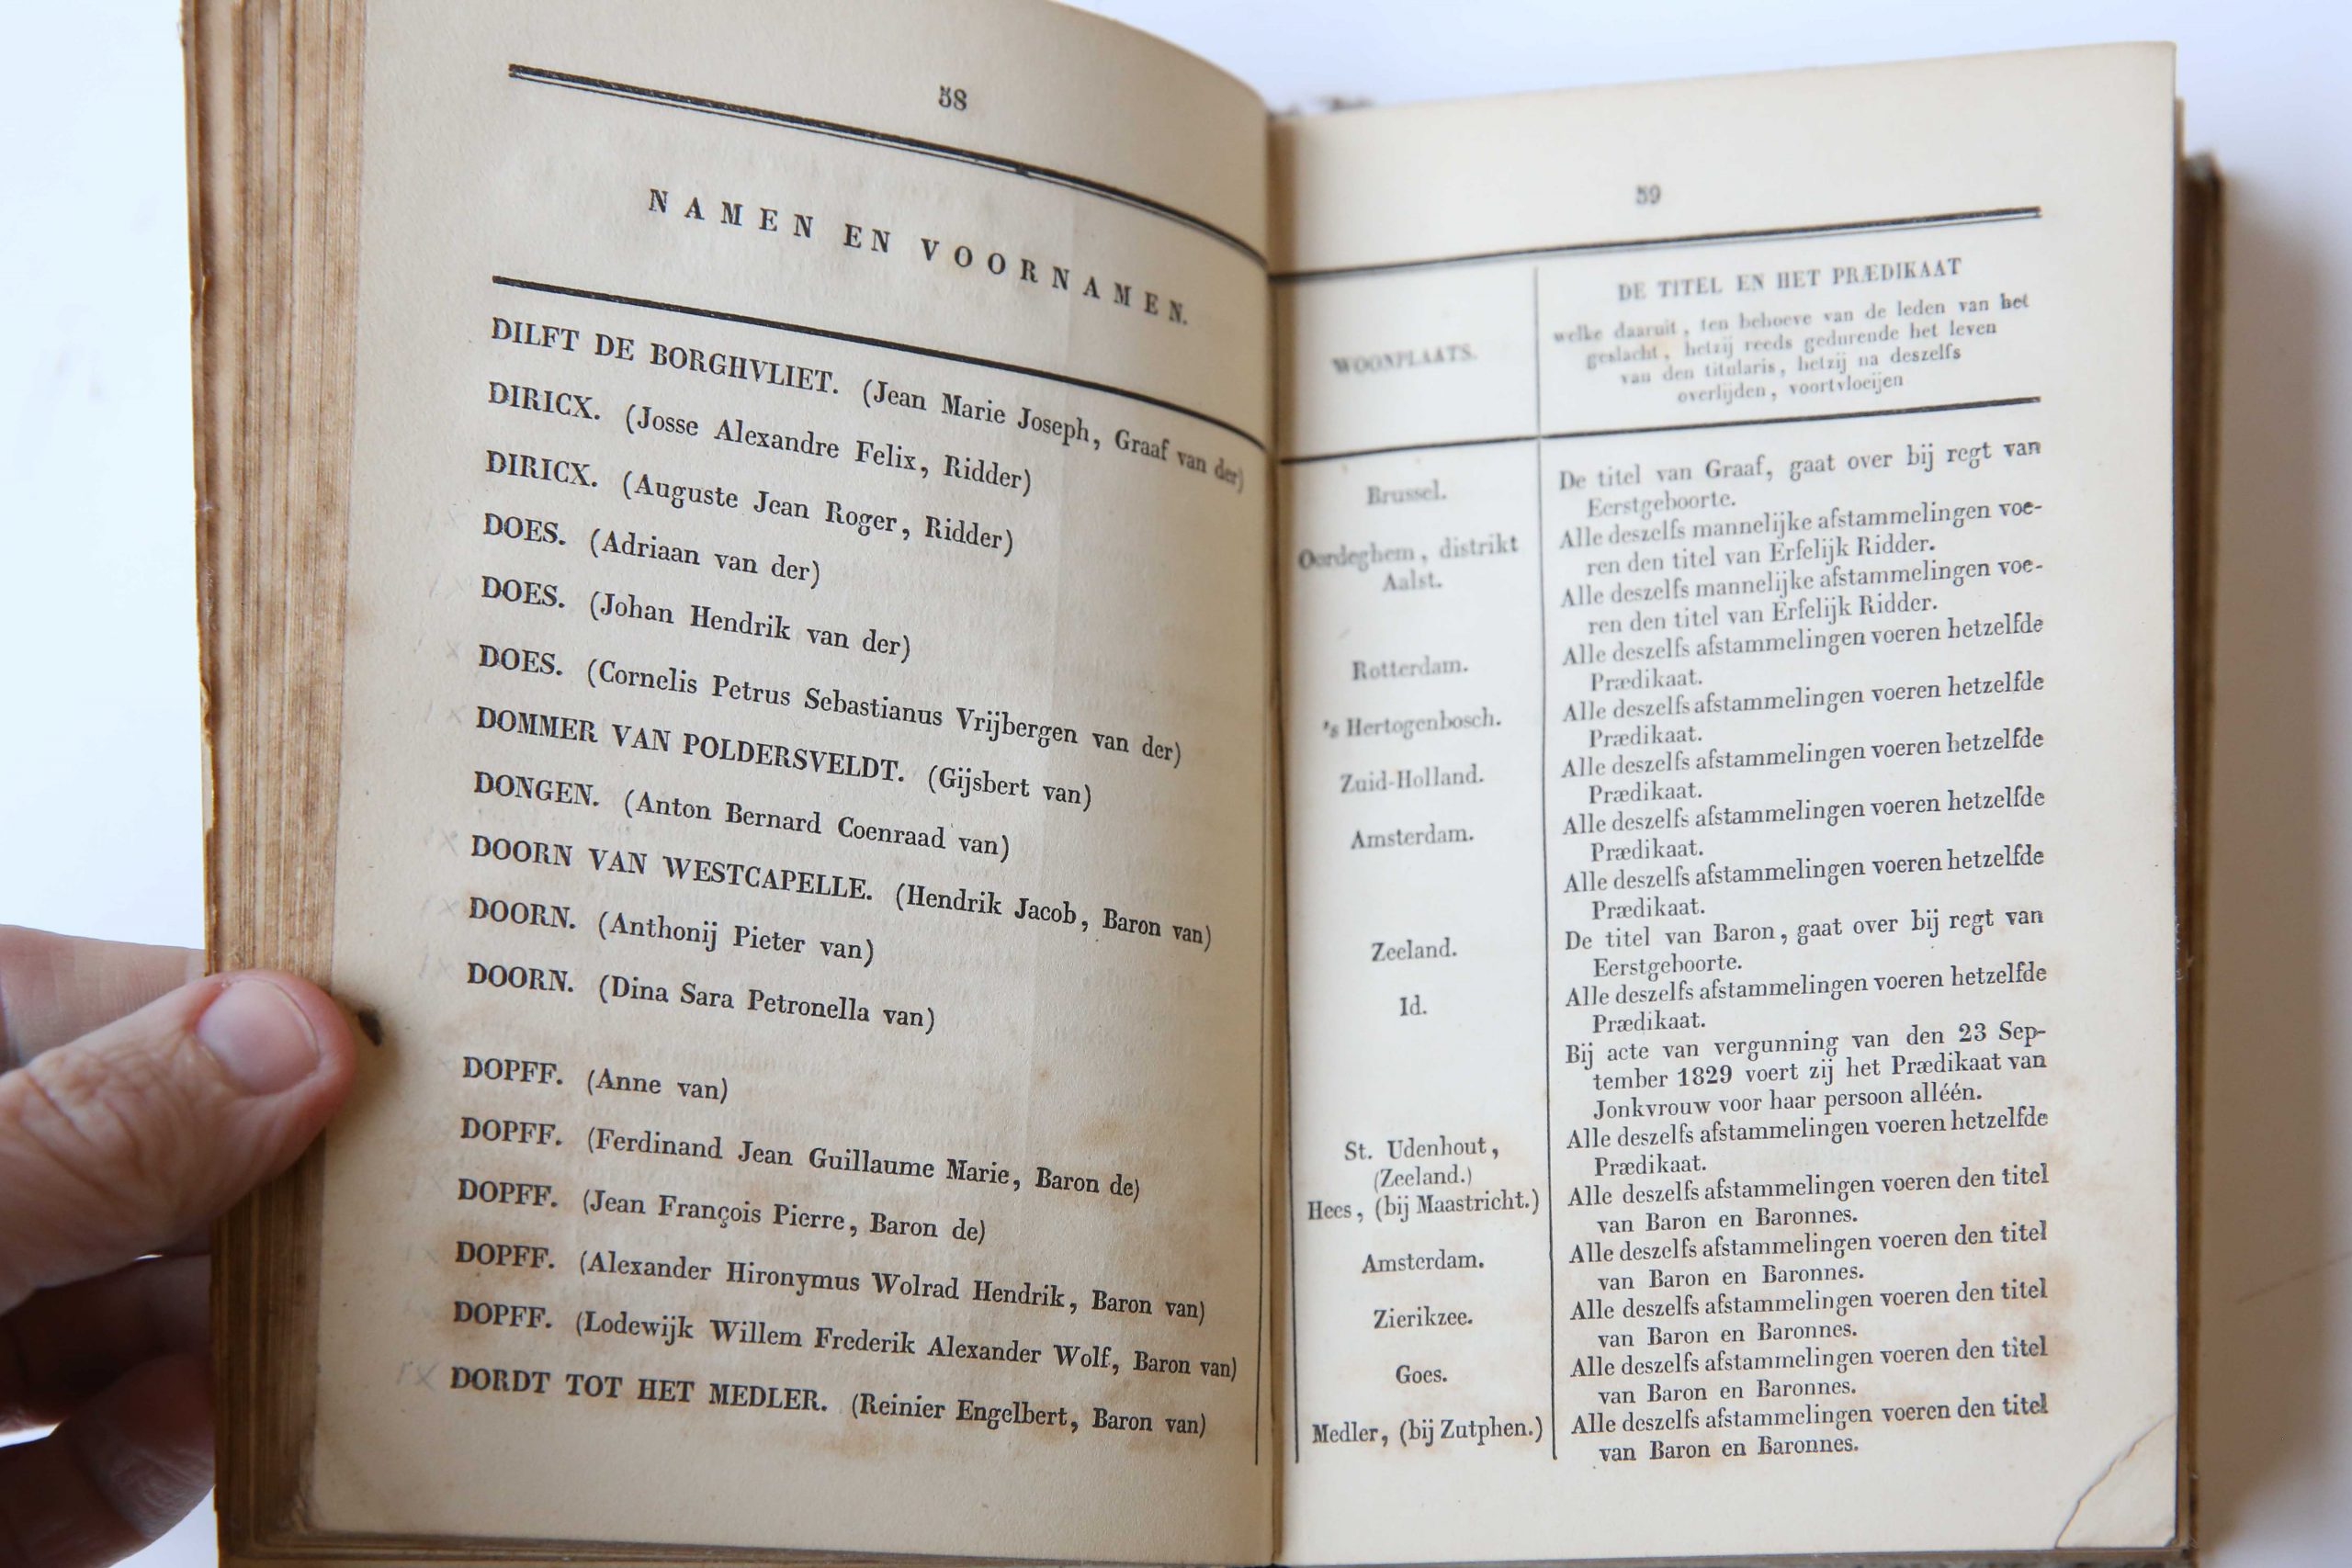 De Nederlandsche Adel of alphabetische naamlijst van familien en personen wier titels of adeldom op de registers van den Hoogen Raad van Adel zijn ingeschreven. Met bijlagen. Zalt Bommel, Joh. Noman, 1846, 243 pp.